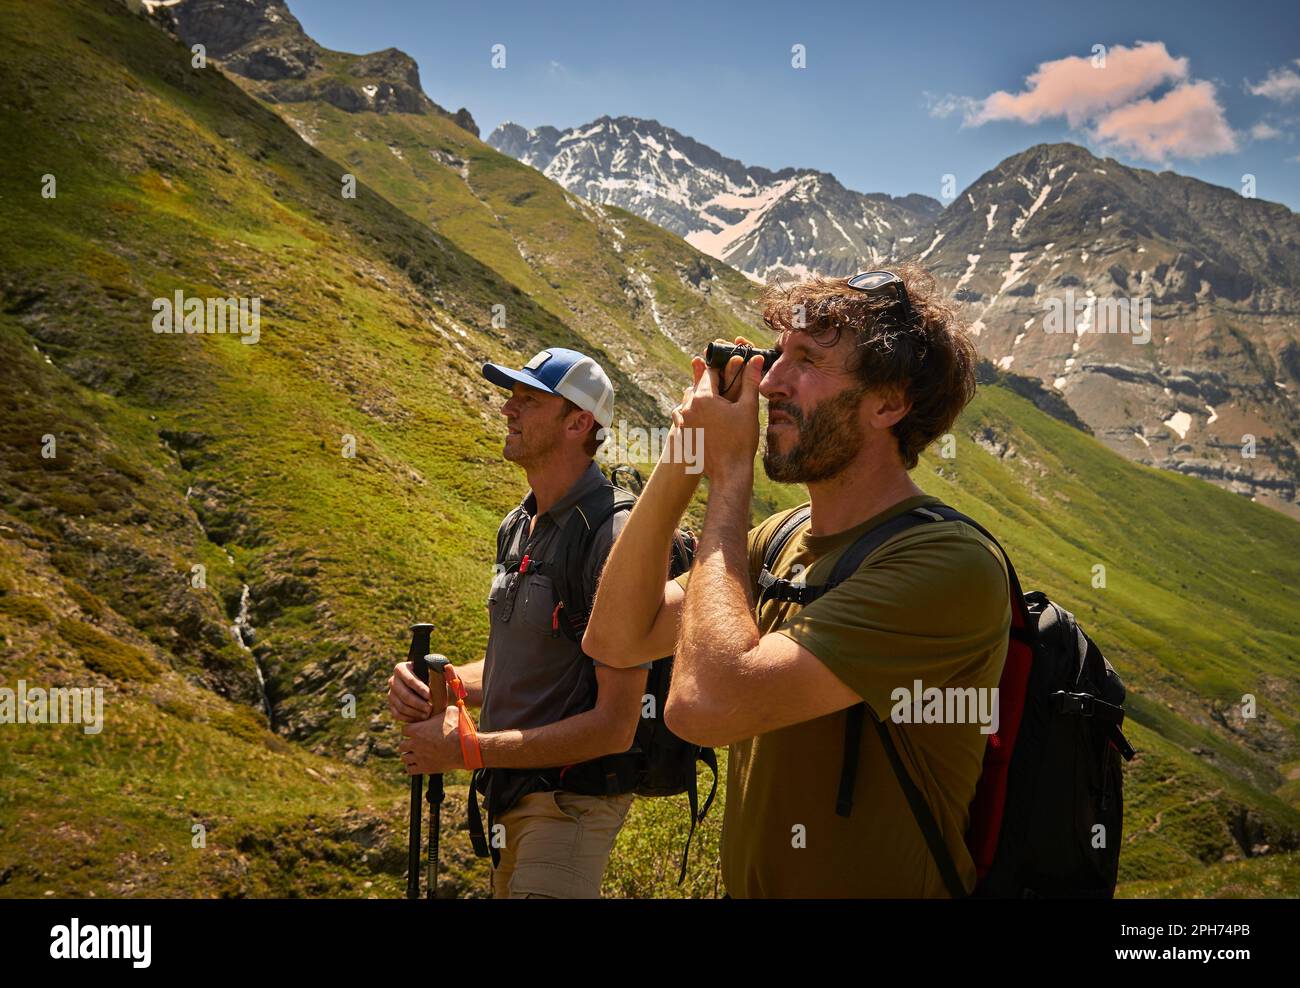 Nahporträt von zwei Bergsteigern, die durch das Fernglas auf der Suche nach Gipfeln zum Aufsteigen schauen, im Hintergrund können Sie andere Berge mit Strom sehen Stockfoto